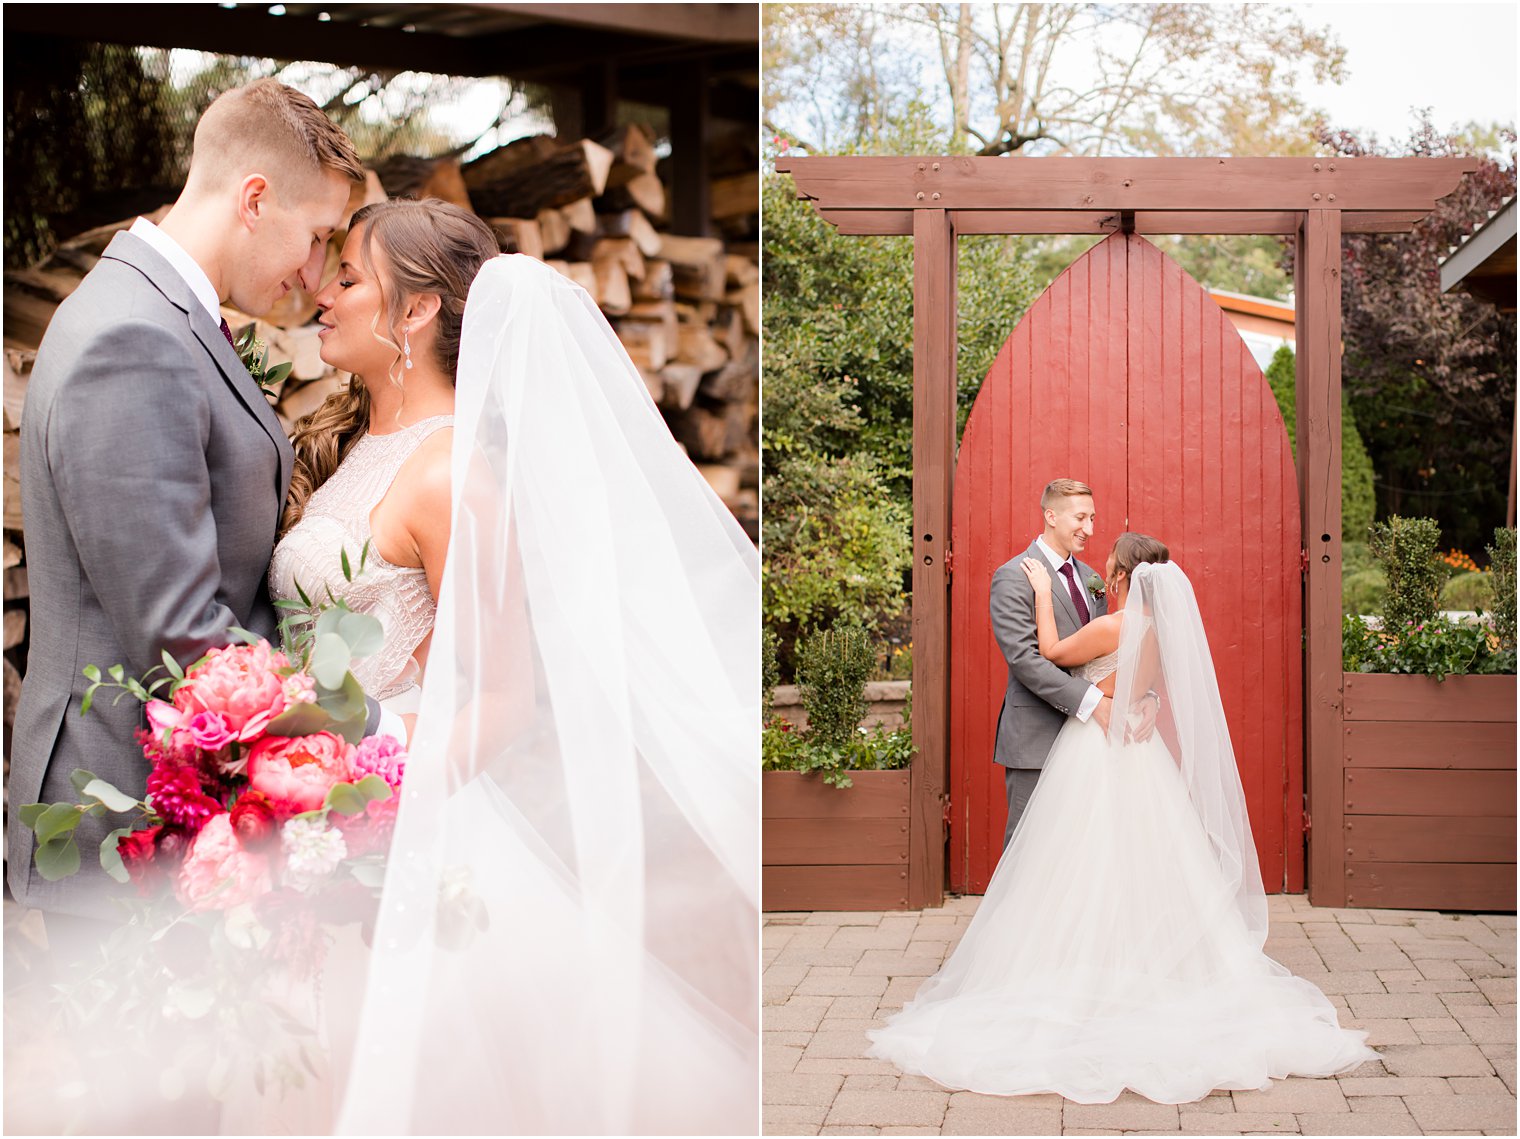 Idalia Photography captures newlyweds at Stone House at Stirling Ridge